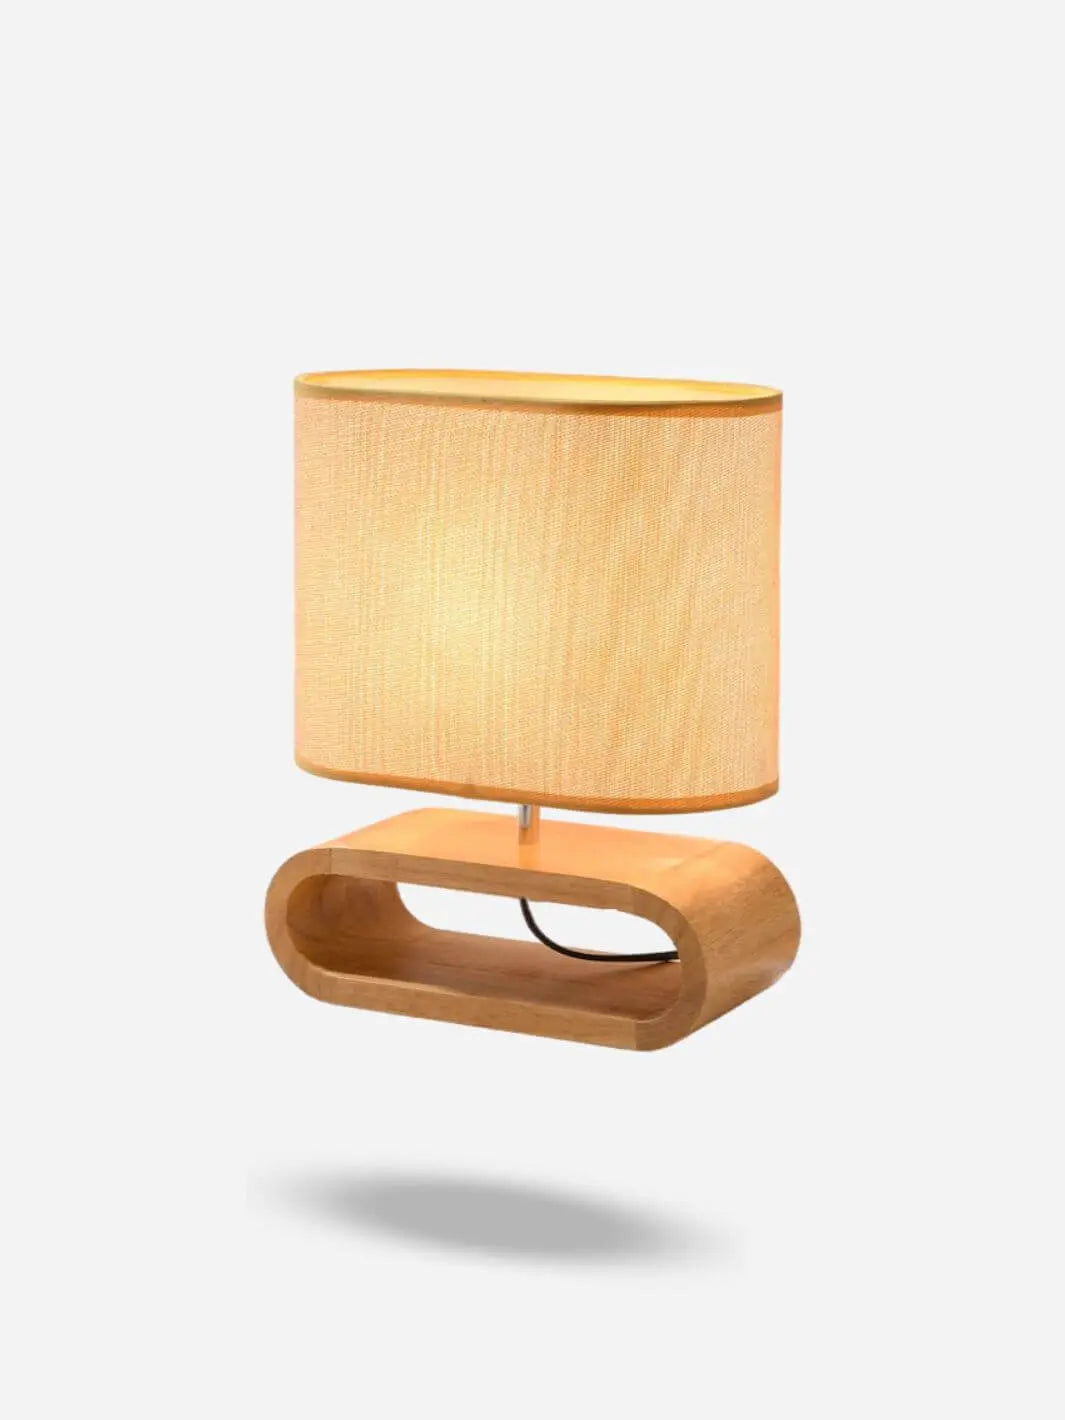 Lampe de chevet Design <br> Scandinave en bois solampe.com